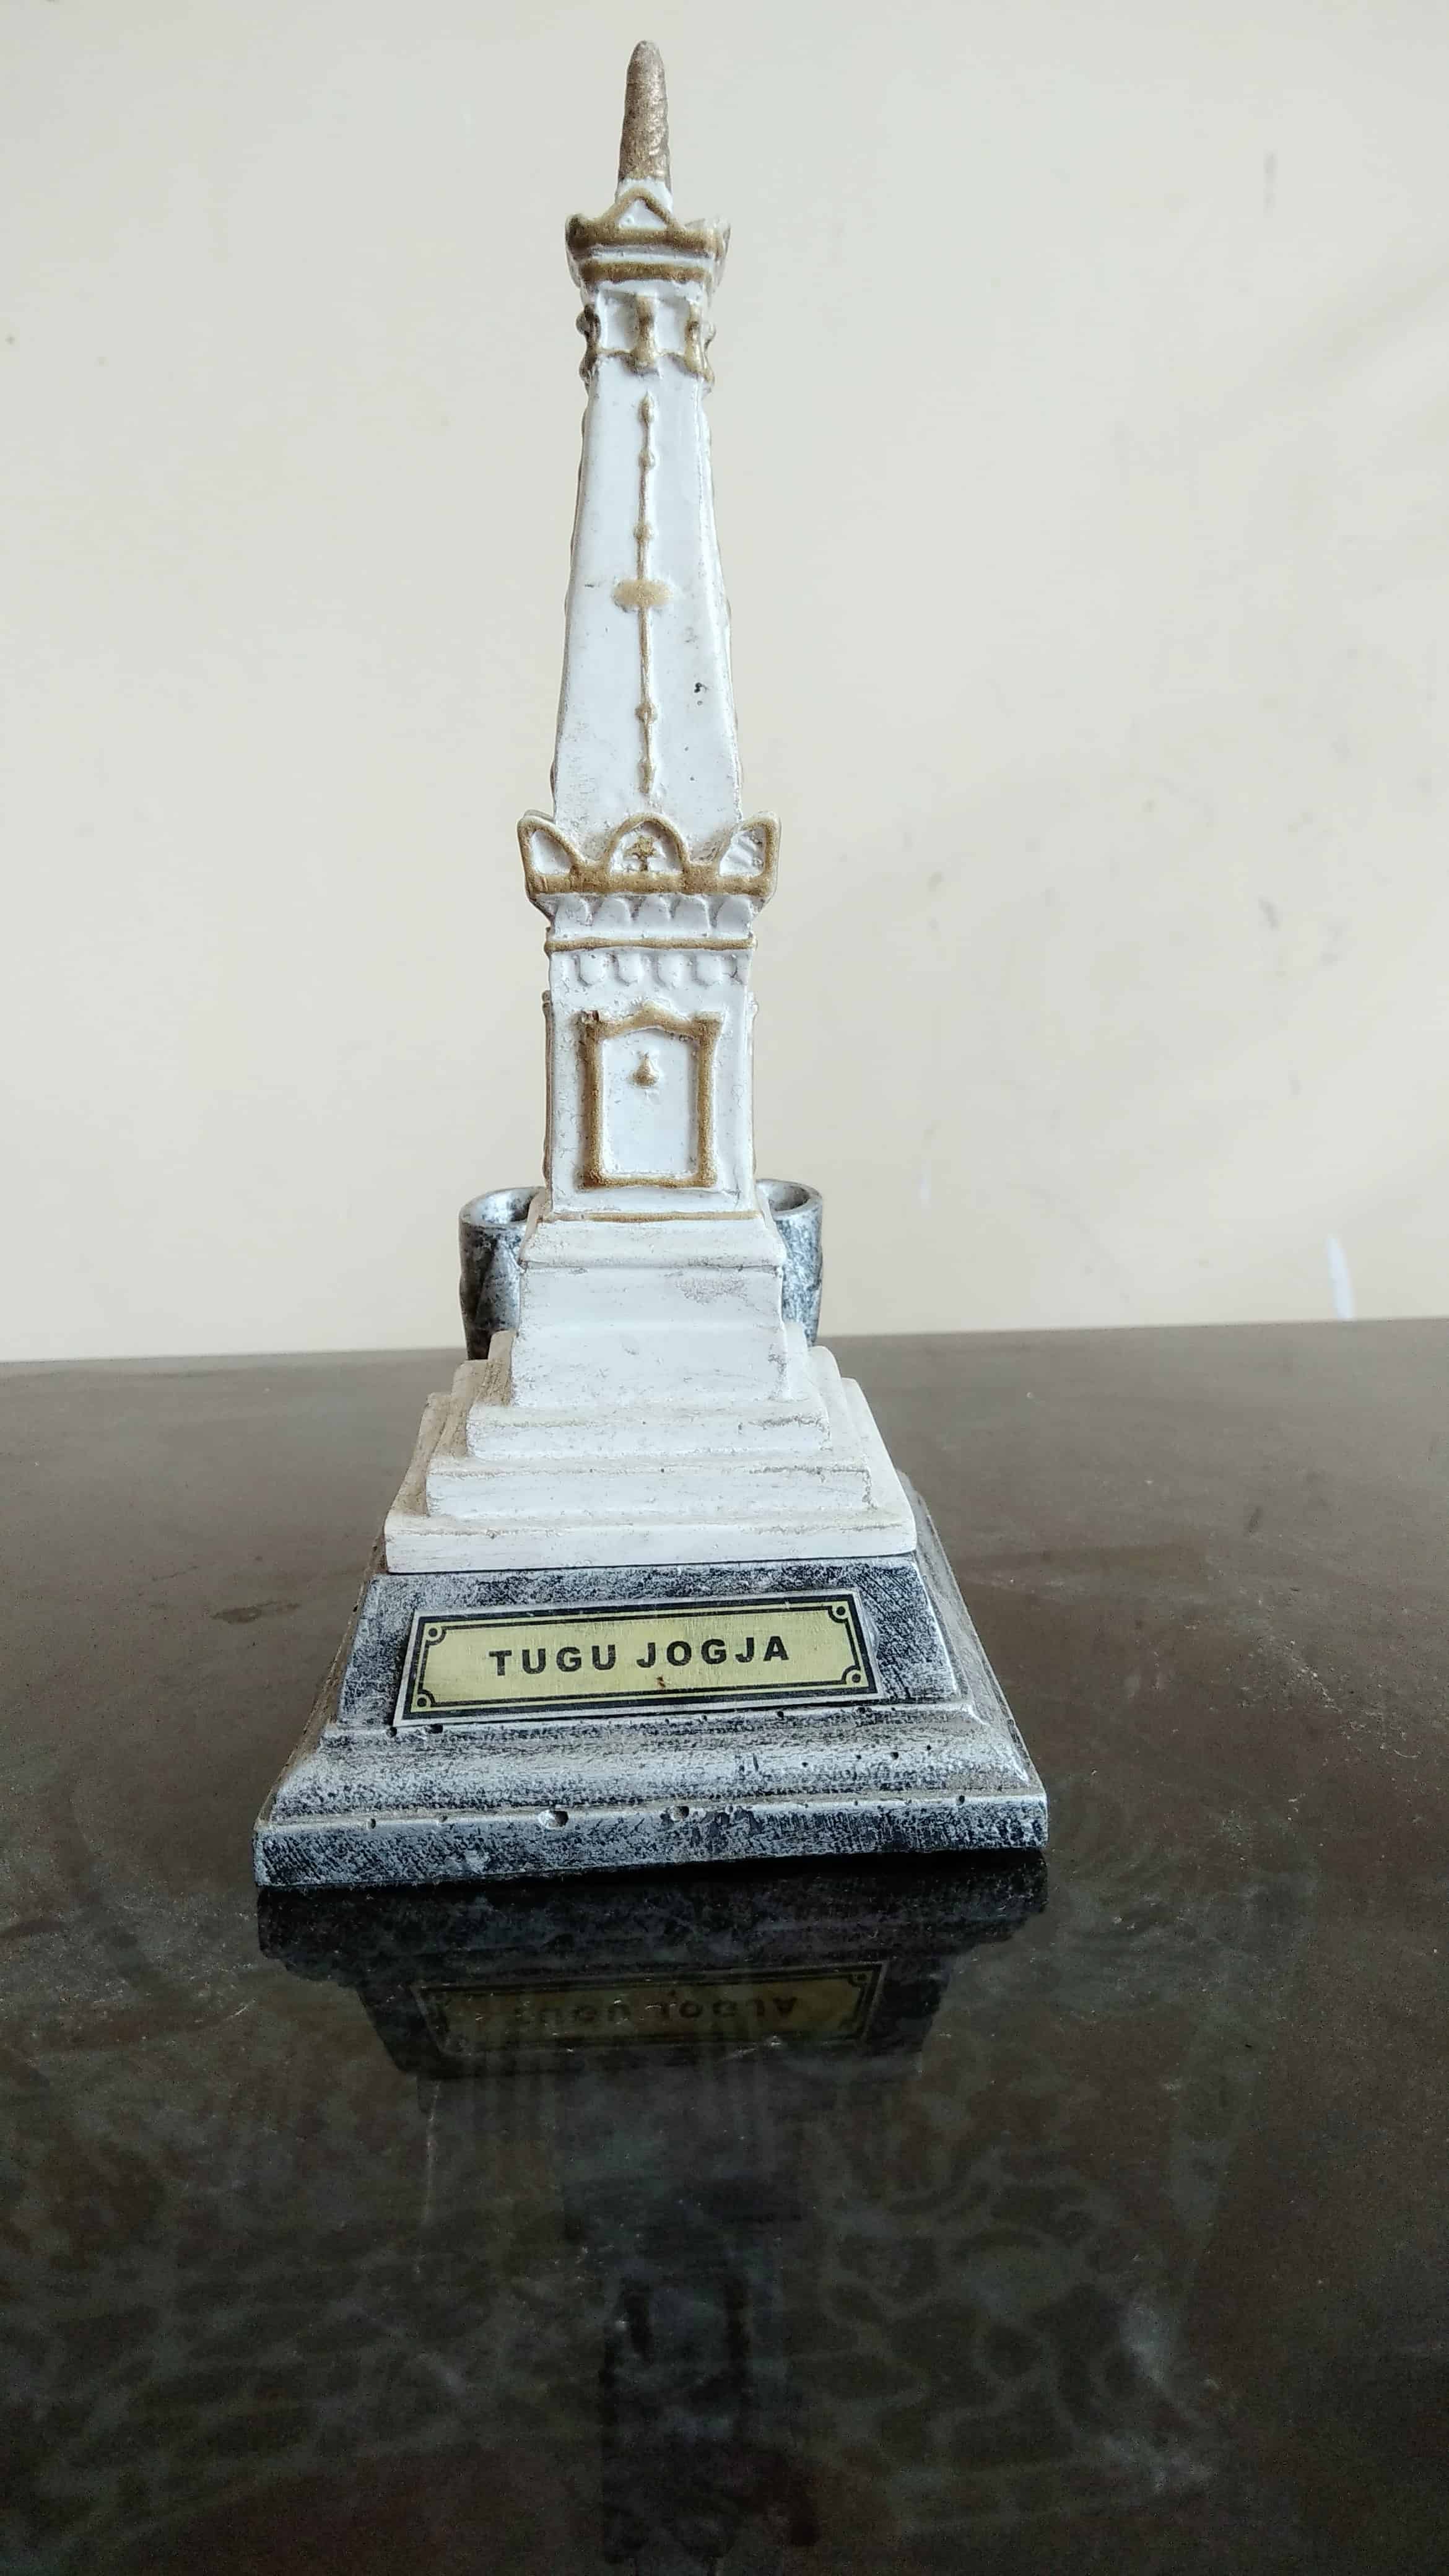 Miniatur Tugu Jogja (Obelisk Miniature Jogjakarta) Original From Yogyakarta Indonesian